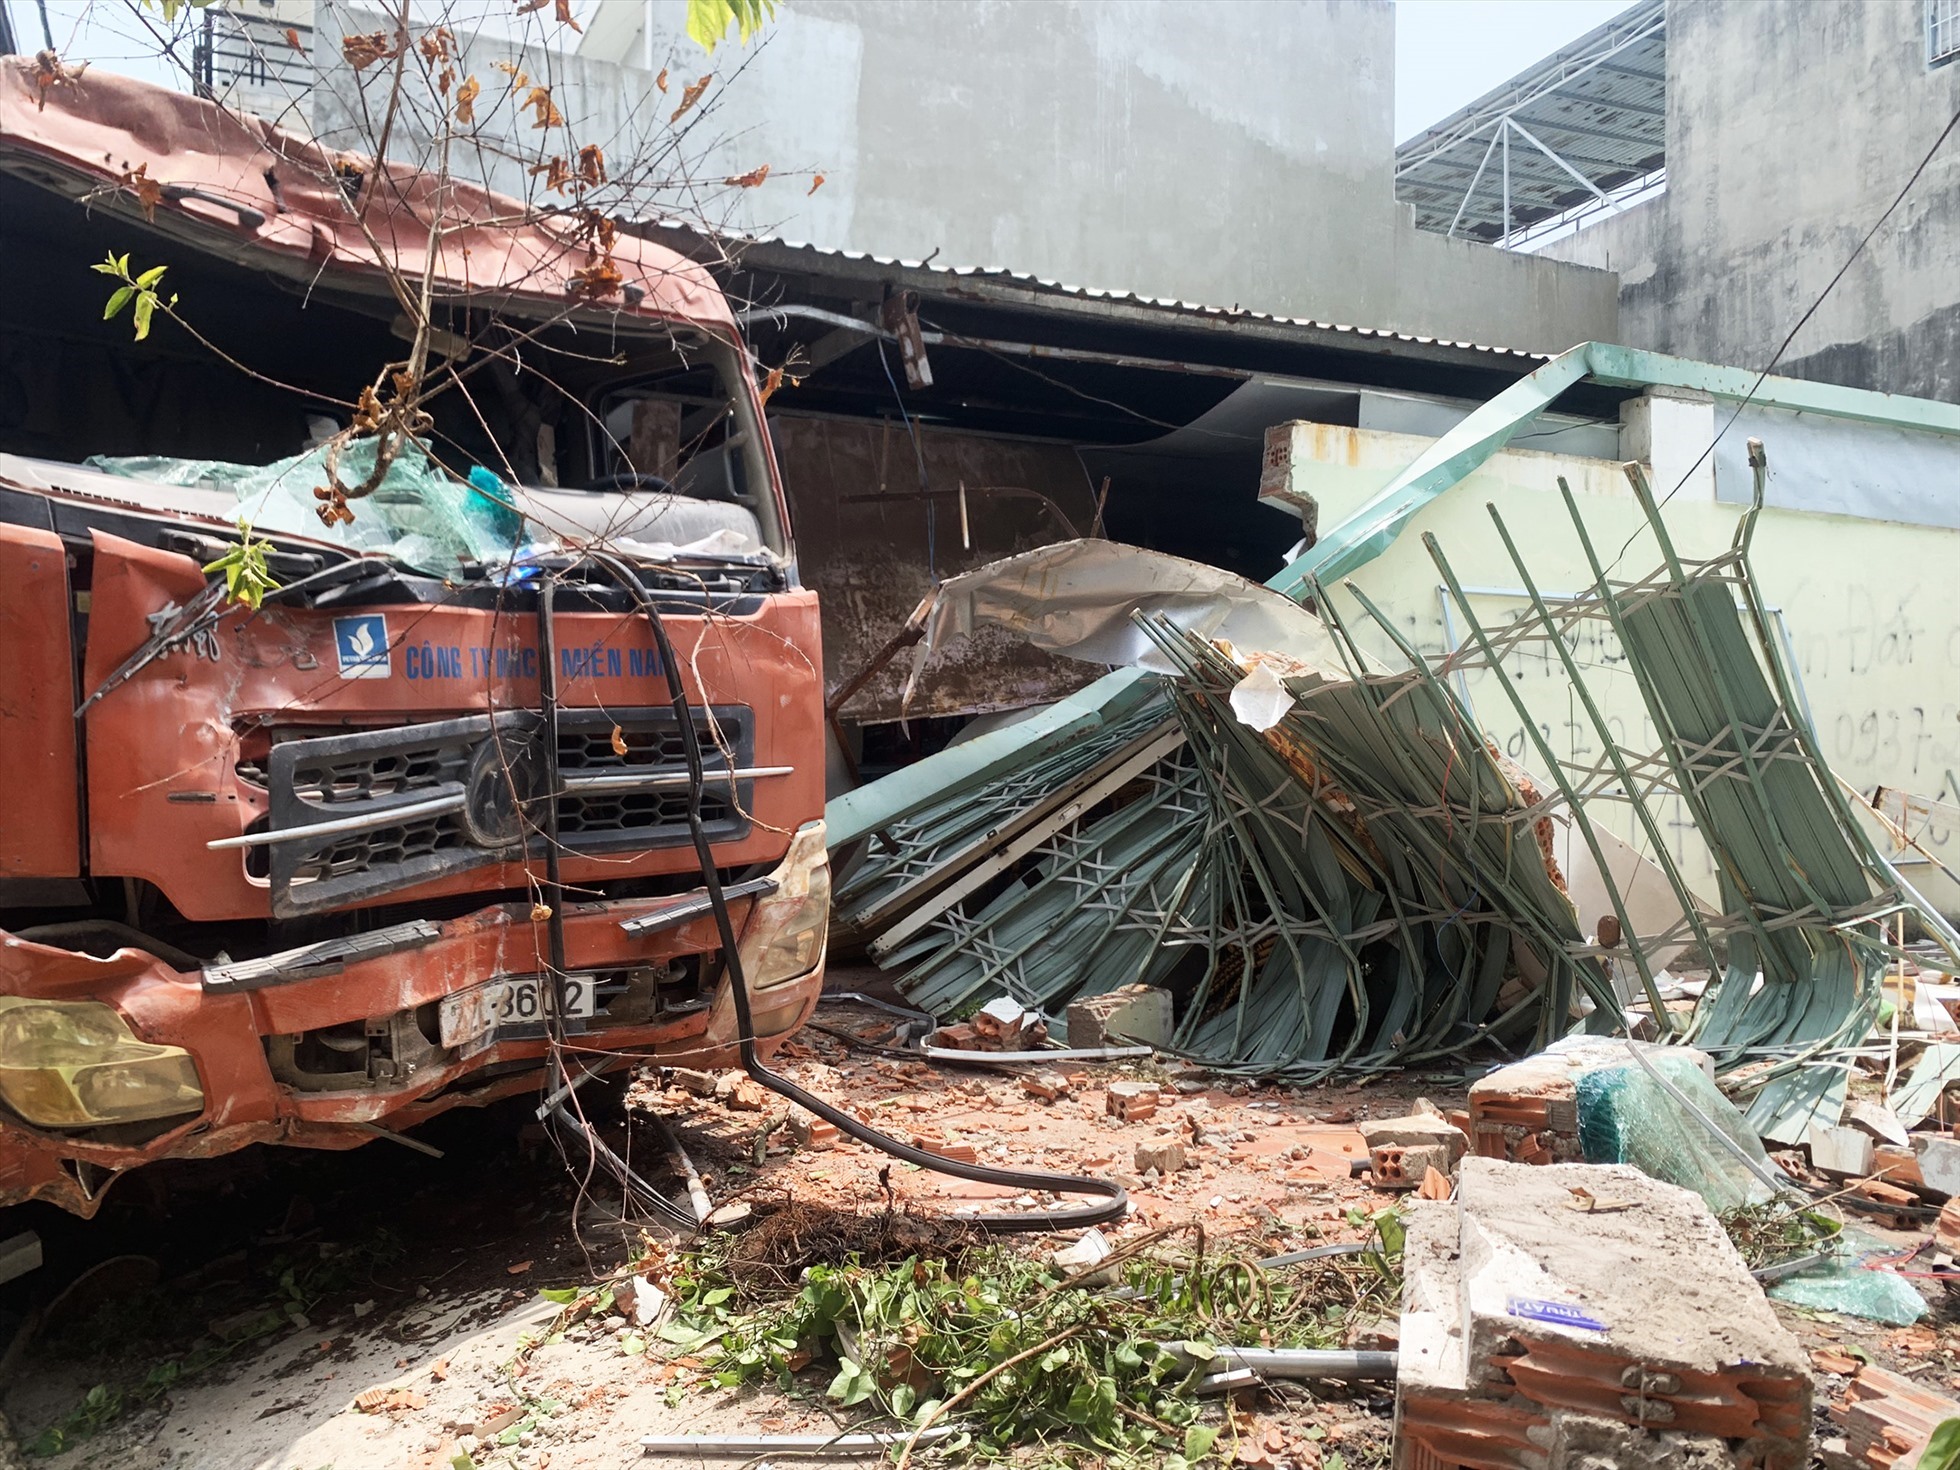 Hiện trường tài xế say rượu lái xe tải tông sập 2 nhà dân tại Bà Rịa - Vũng Tàu ngày 18.4.2023. Ảnh: Công an cung cấp/LDO